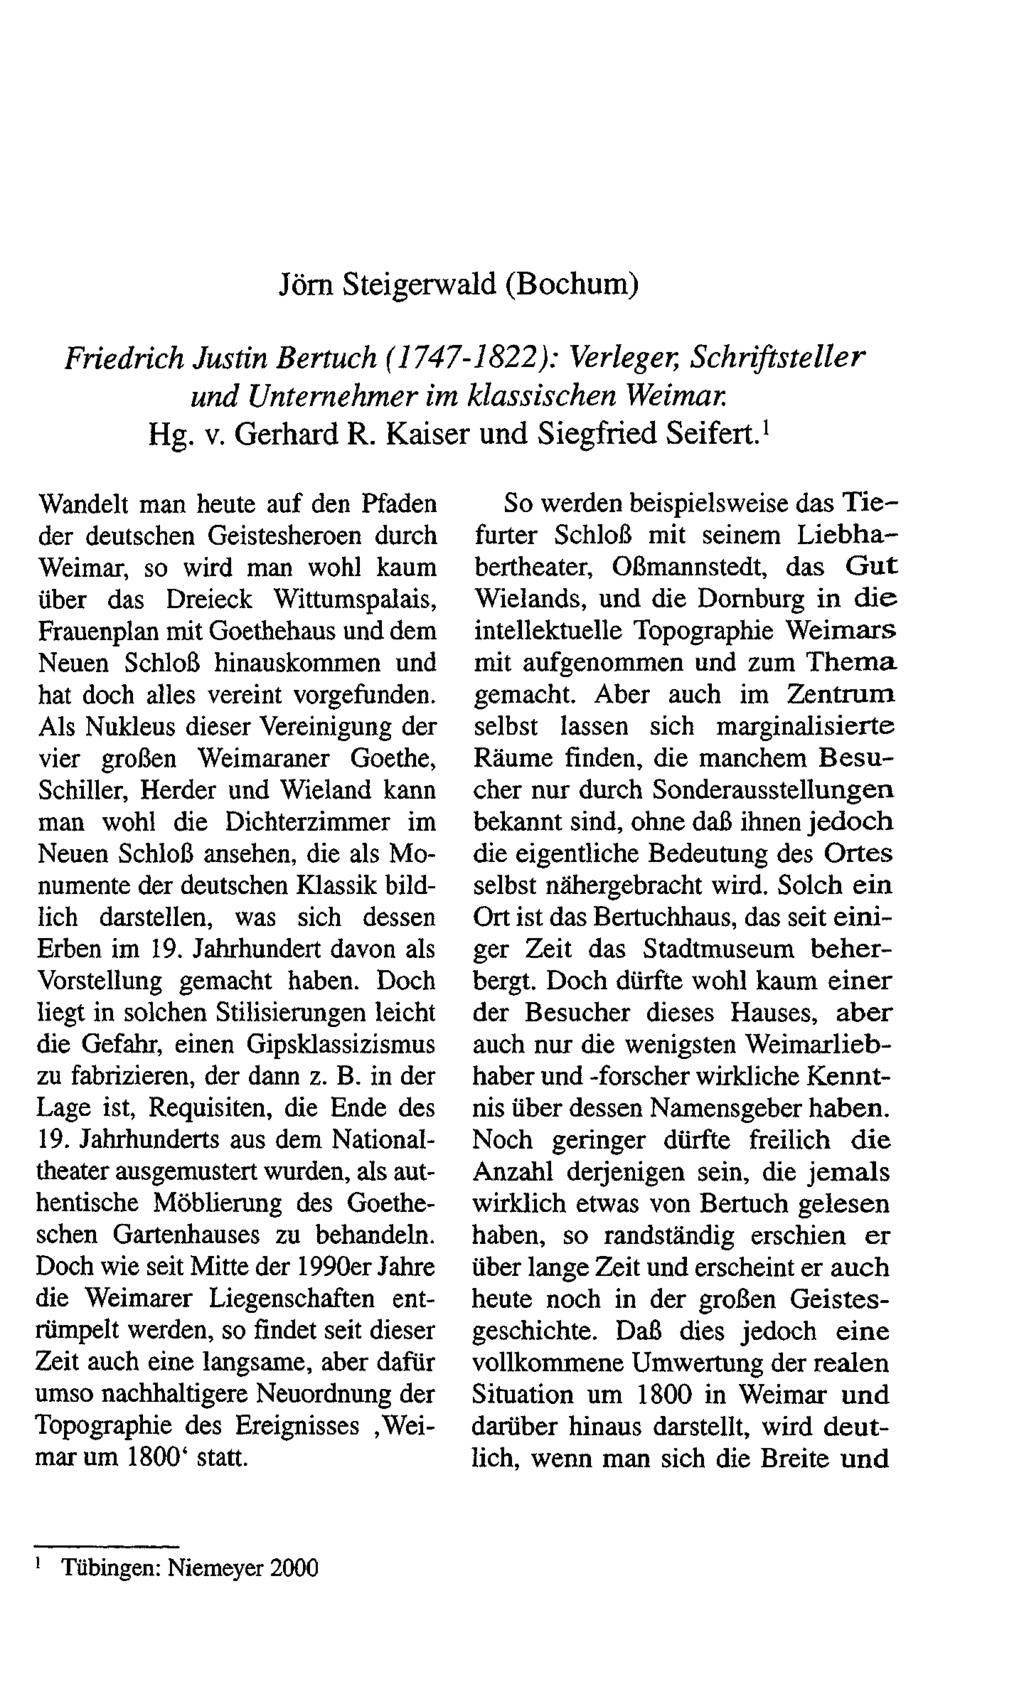 Jörn Steigerwald (Bochum) Friedrich Justin Bertuch (1747-1822): Verlegen Schriftsteller und Unternehmer im klassischen Weimar. Hg. v. Gerhard R. Kaiser und Siegfried Seifert.